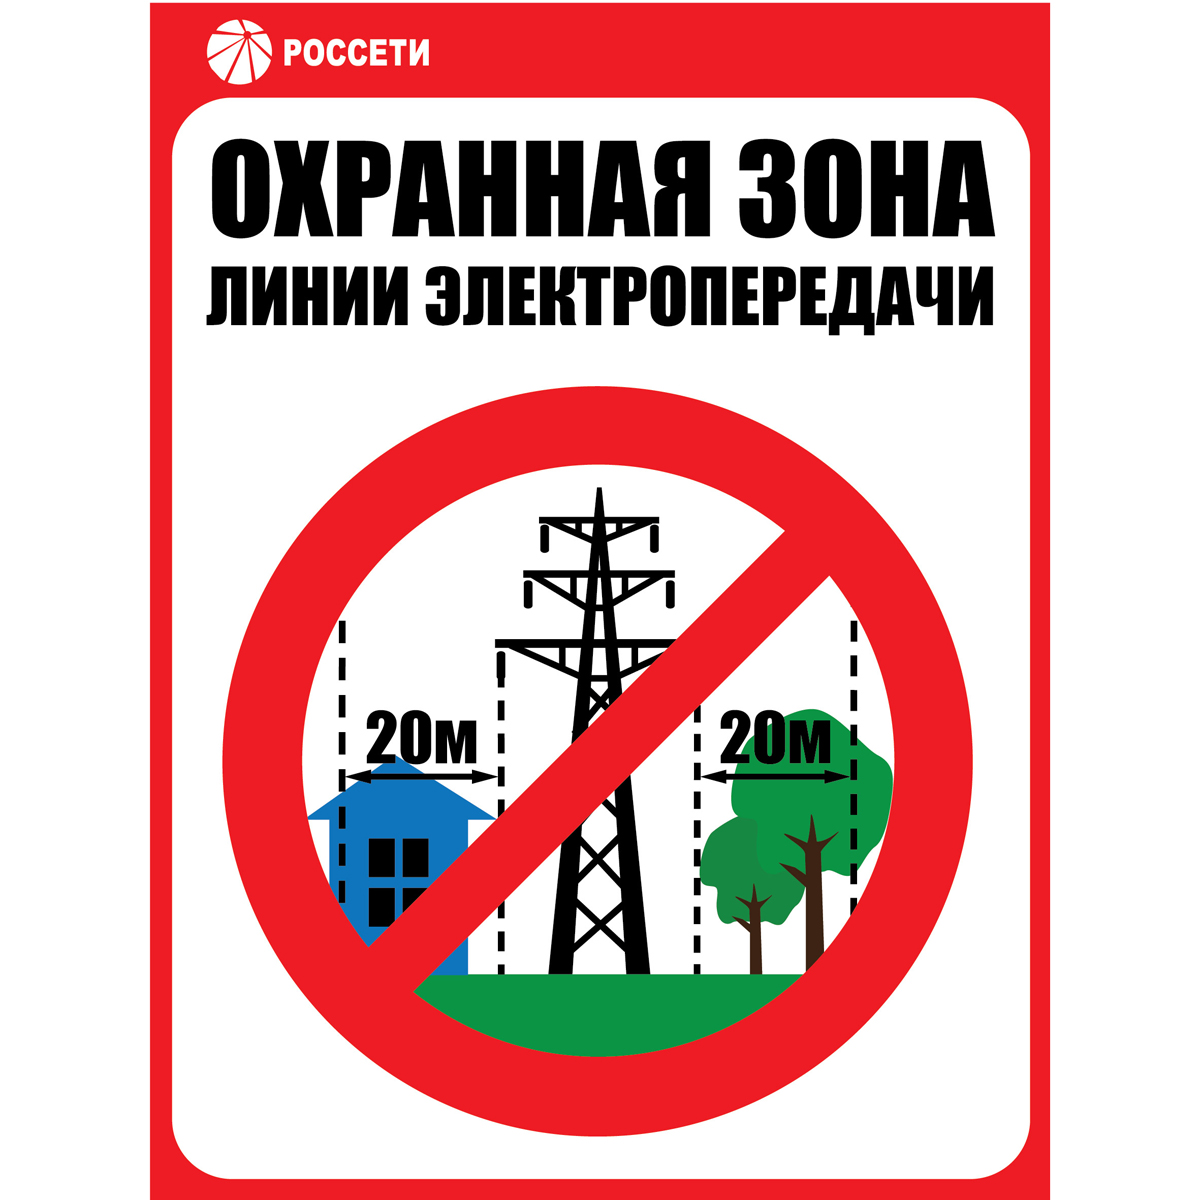 Россети Центр Смоленскэнерго» напоминает о соблюдении правил охранных зон на объектах электросетевого хозяйства